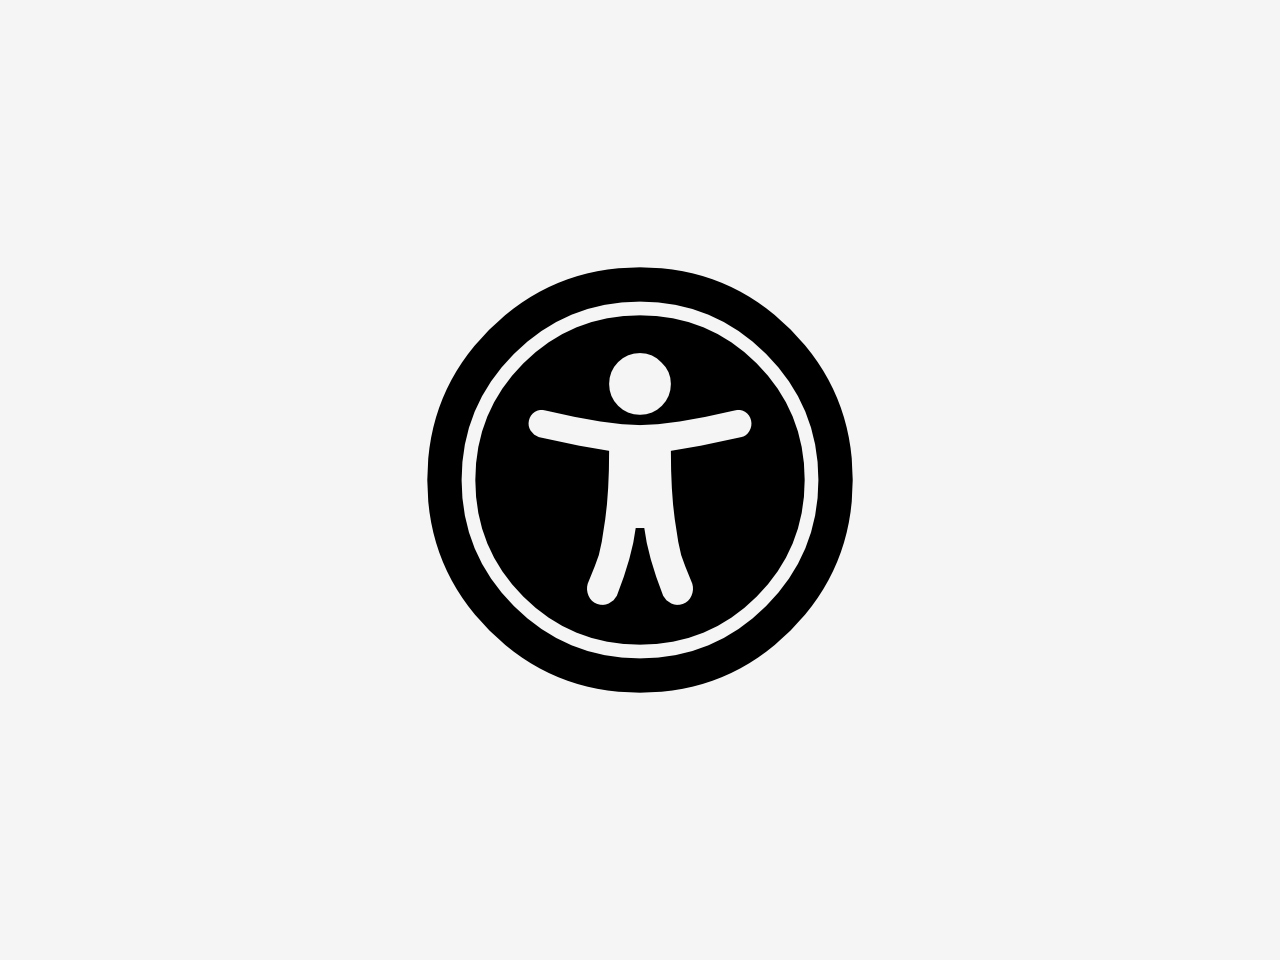 Bild zeigt ein Symbol für Barrierefreiheit. Das Symbol zeigt einen Kreis, indem ein Mensch mit geöffneten Armen und Beinen abgebildet ist.